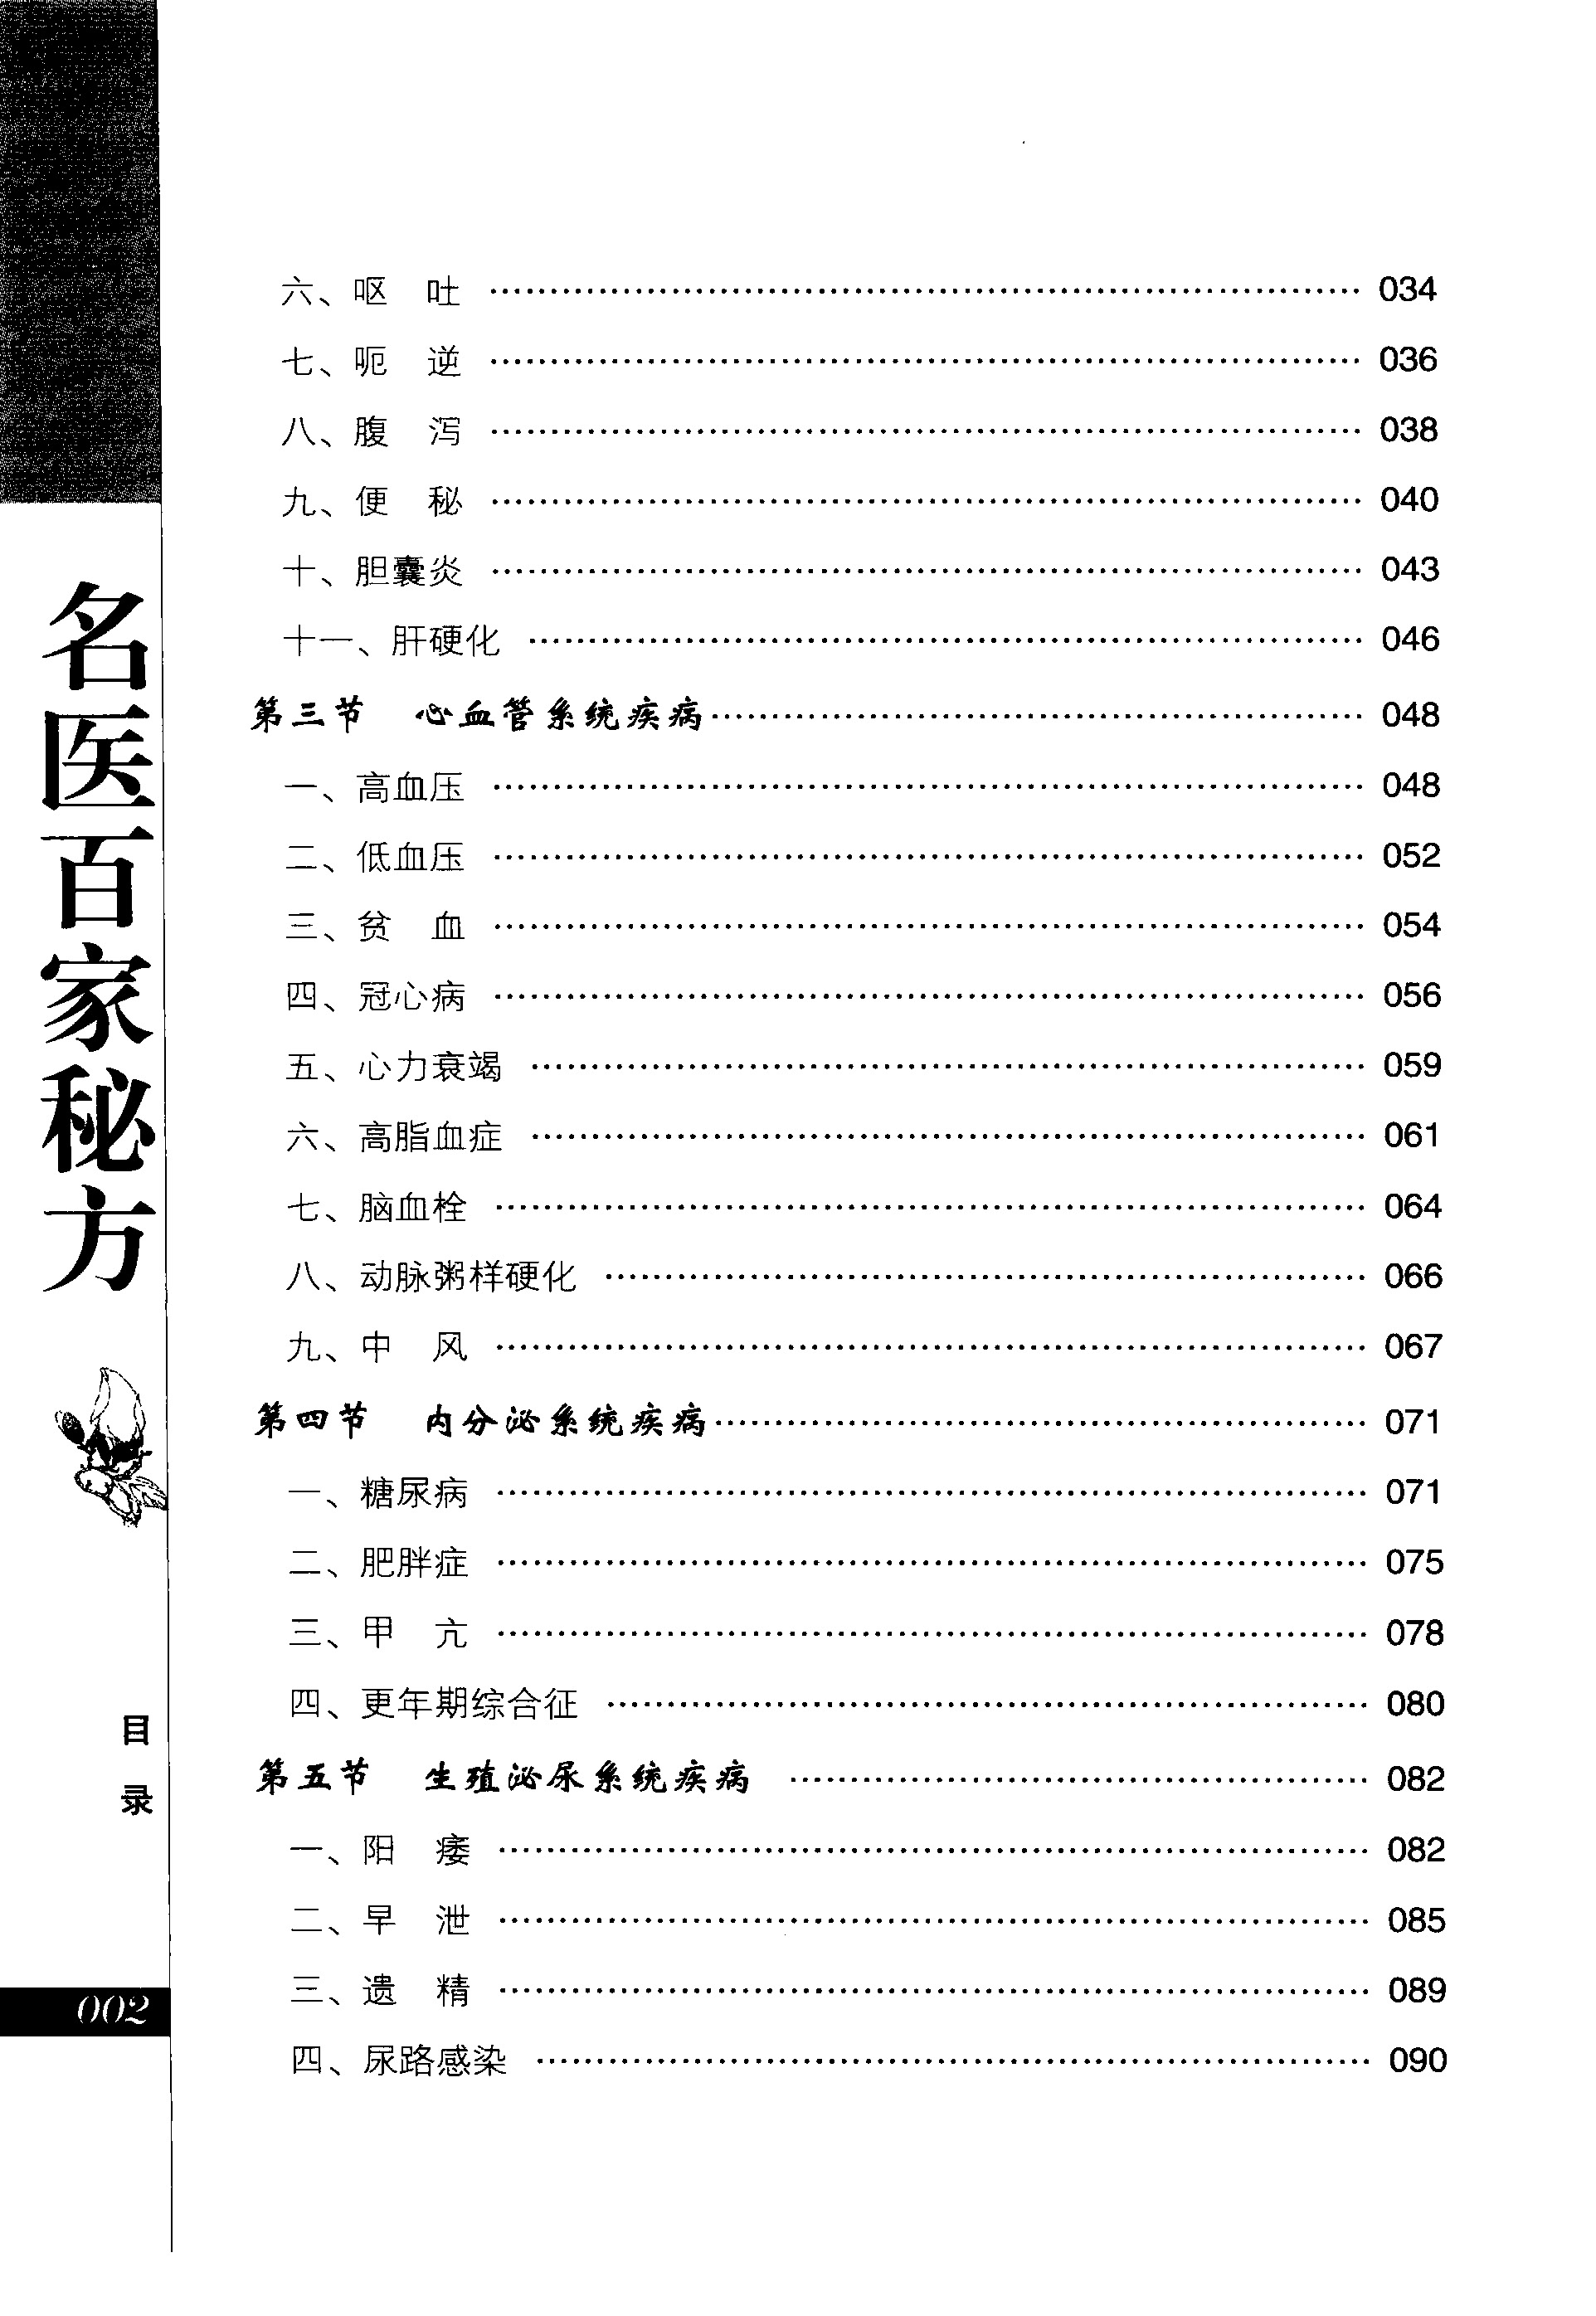 中华传统万年历(1801-2100年) by 樊岚岚 | Goodreads